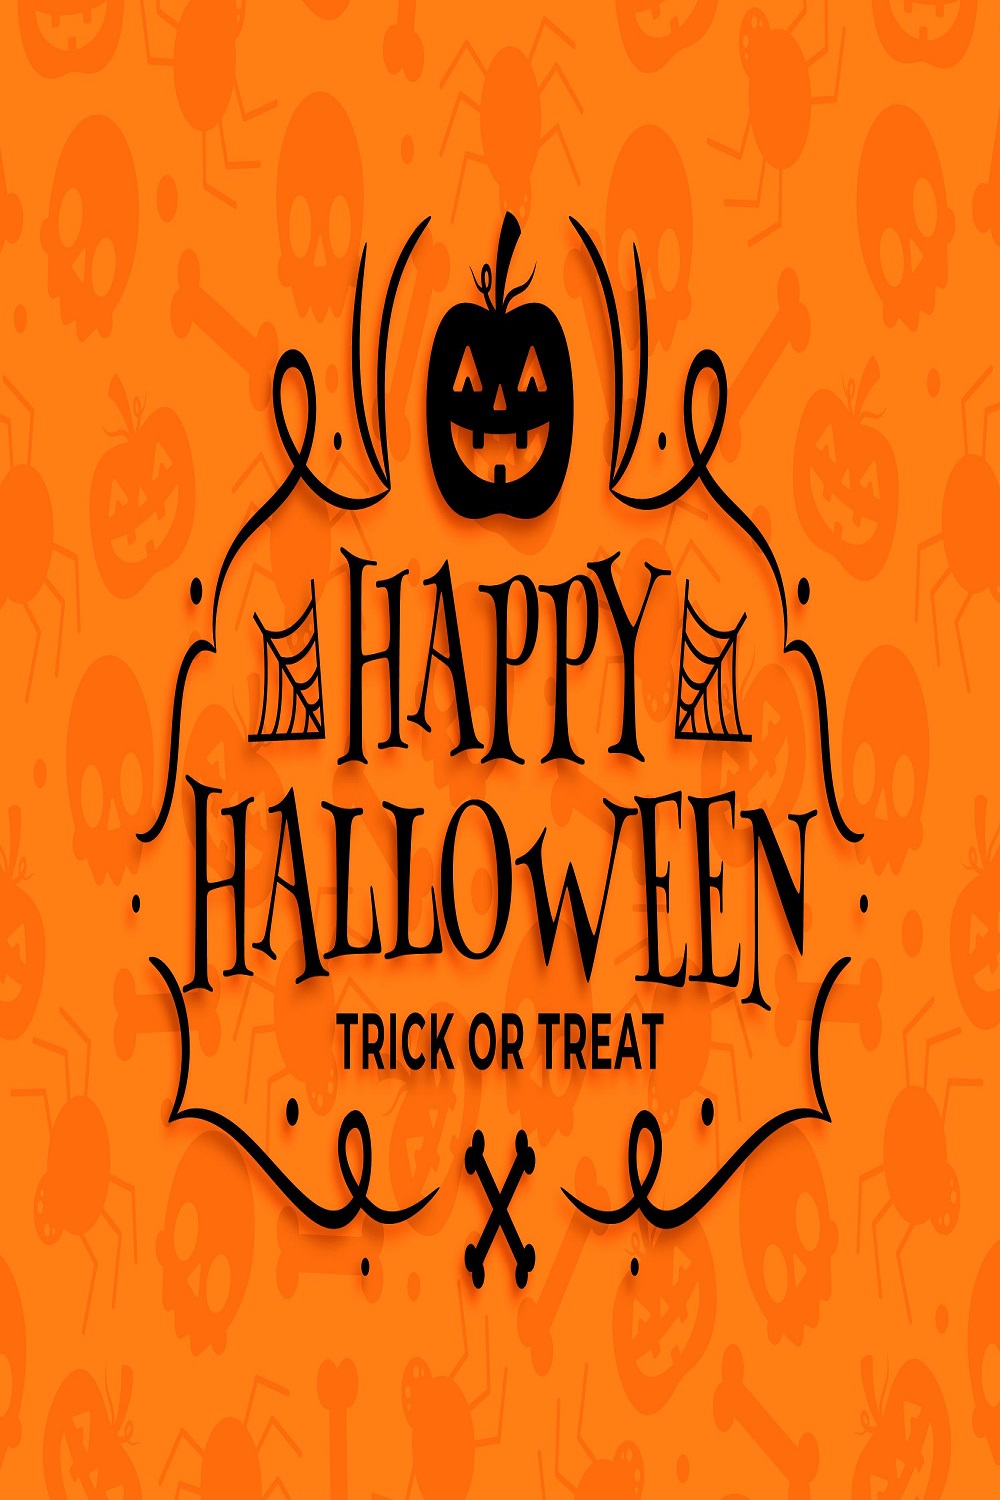 Happy Halloween wallpaper design pinterest preview image.